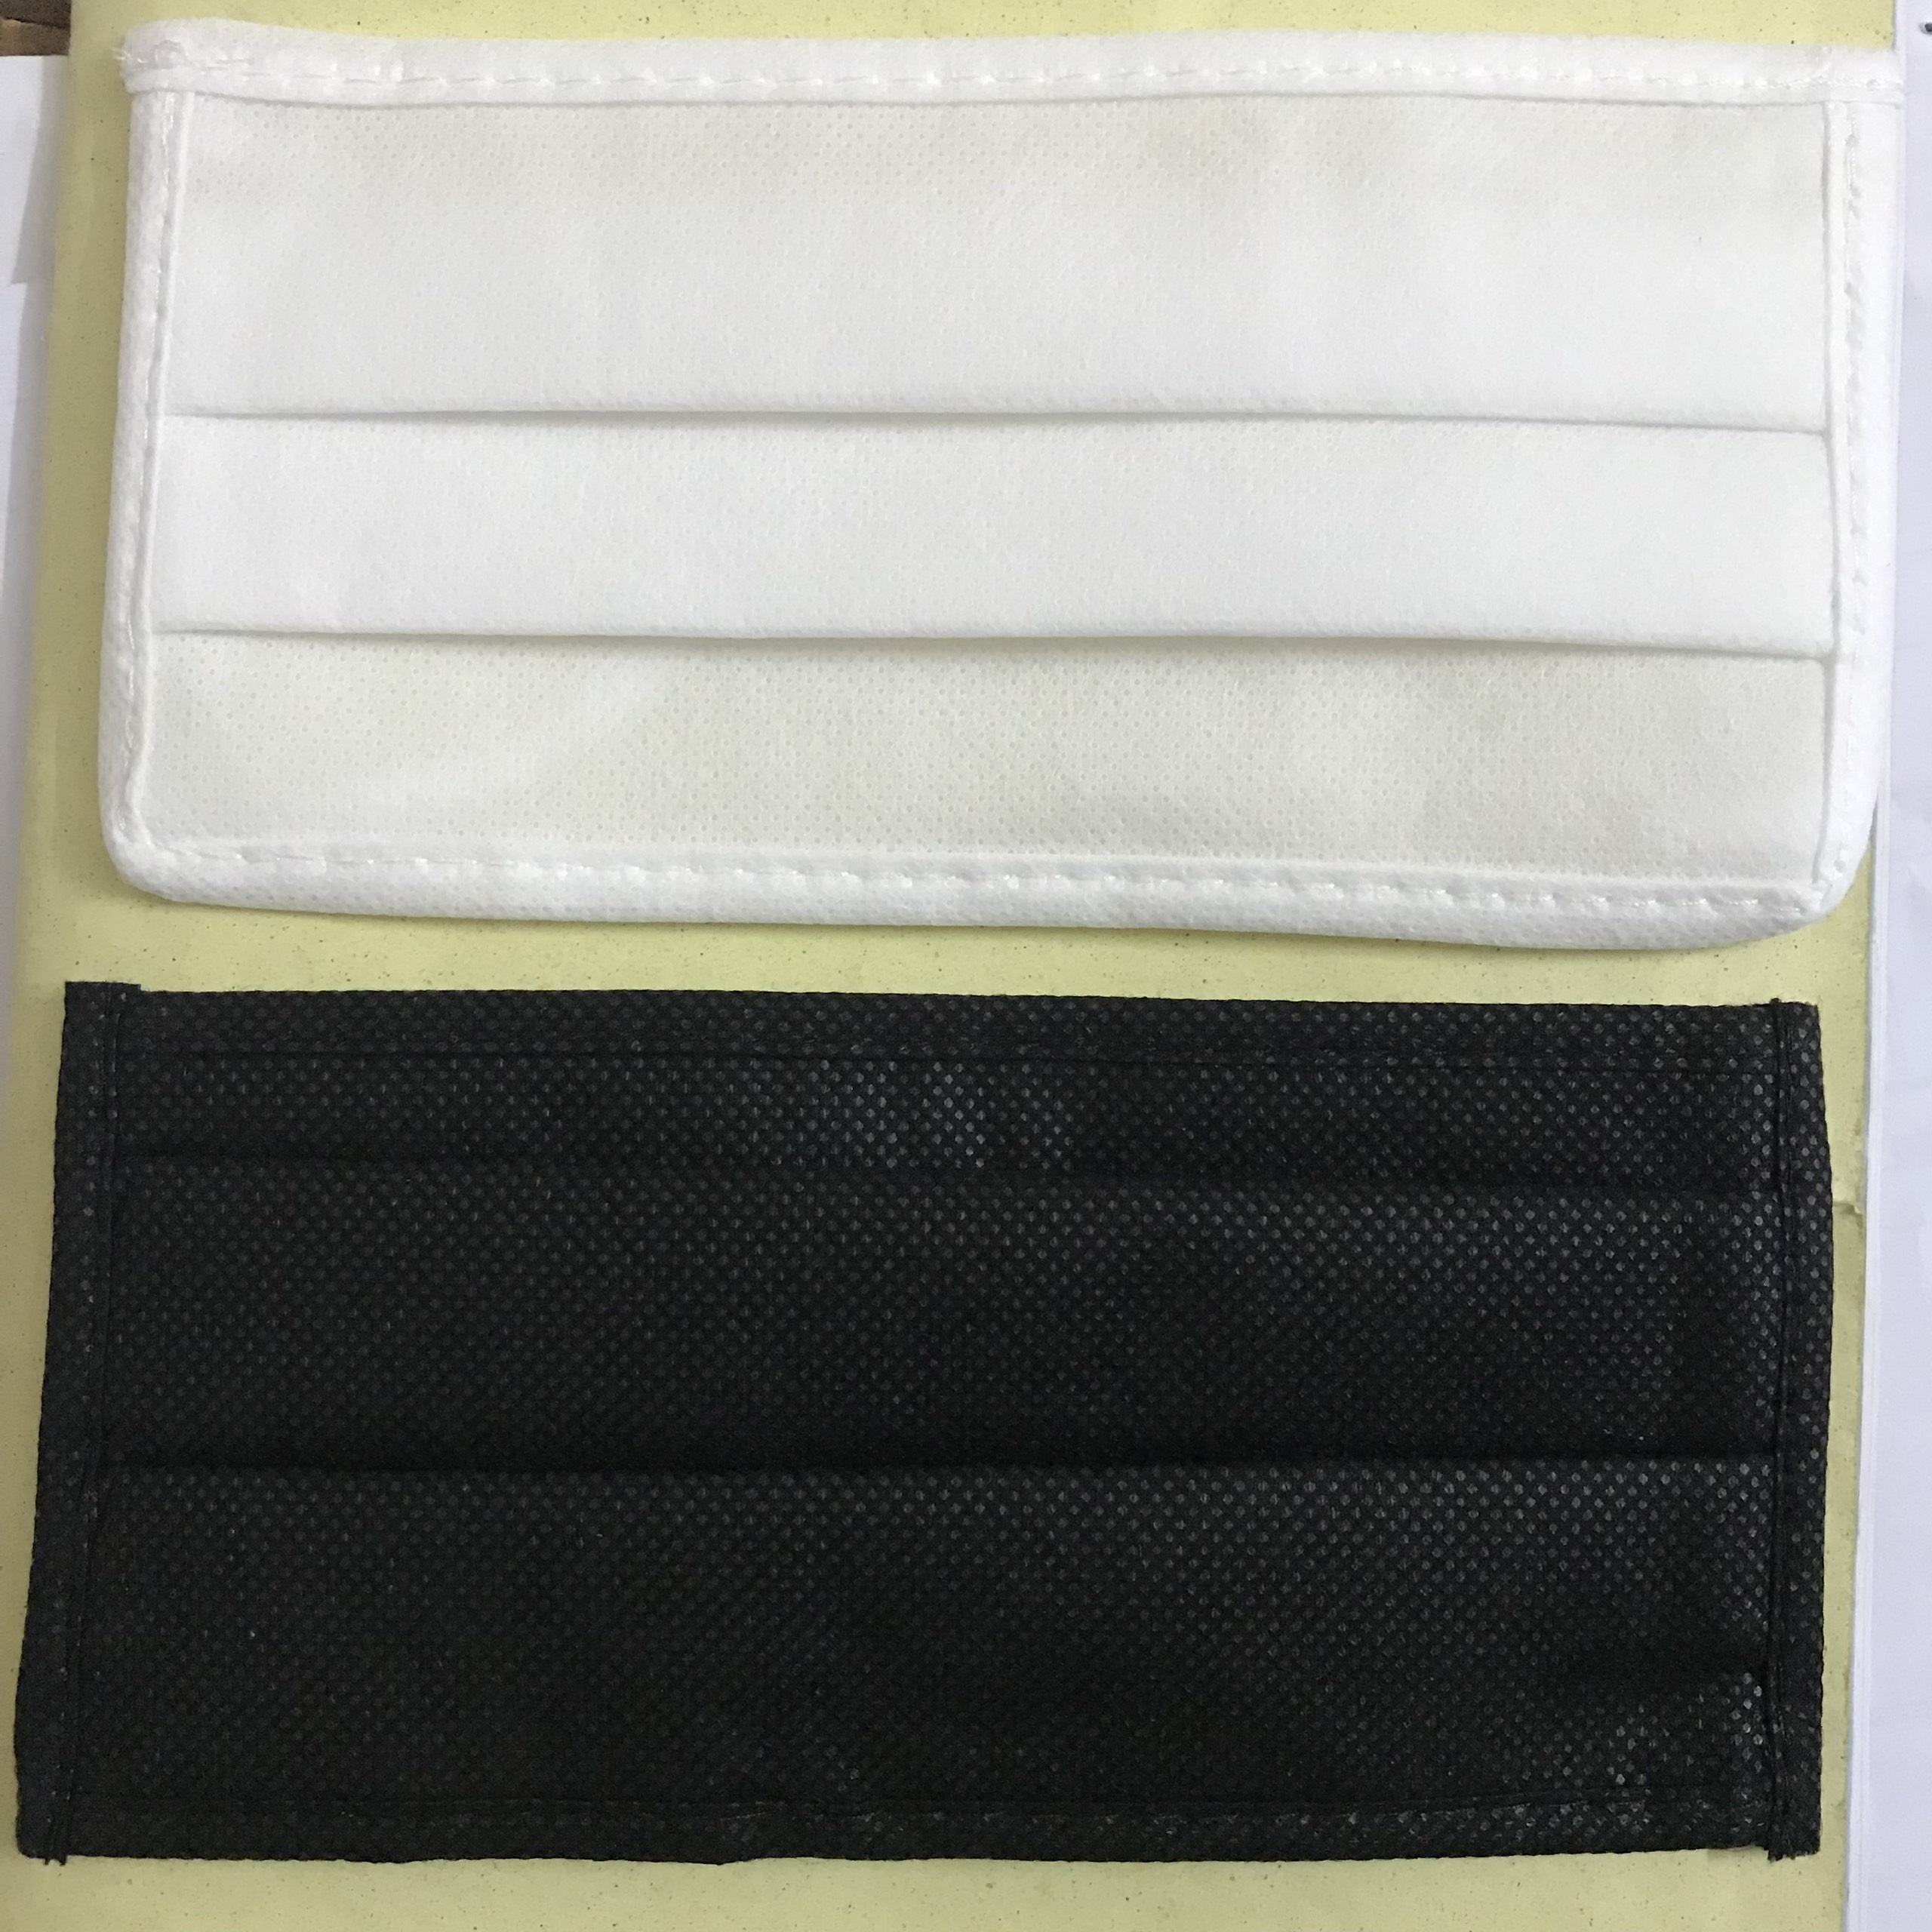 Khẩu trang kháng bụi vải không dệt - túi 10 cái có thể tái sử sau khi giặt (giao màu ngẫu nhiên)